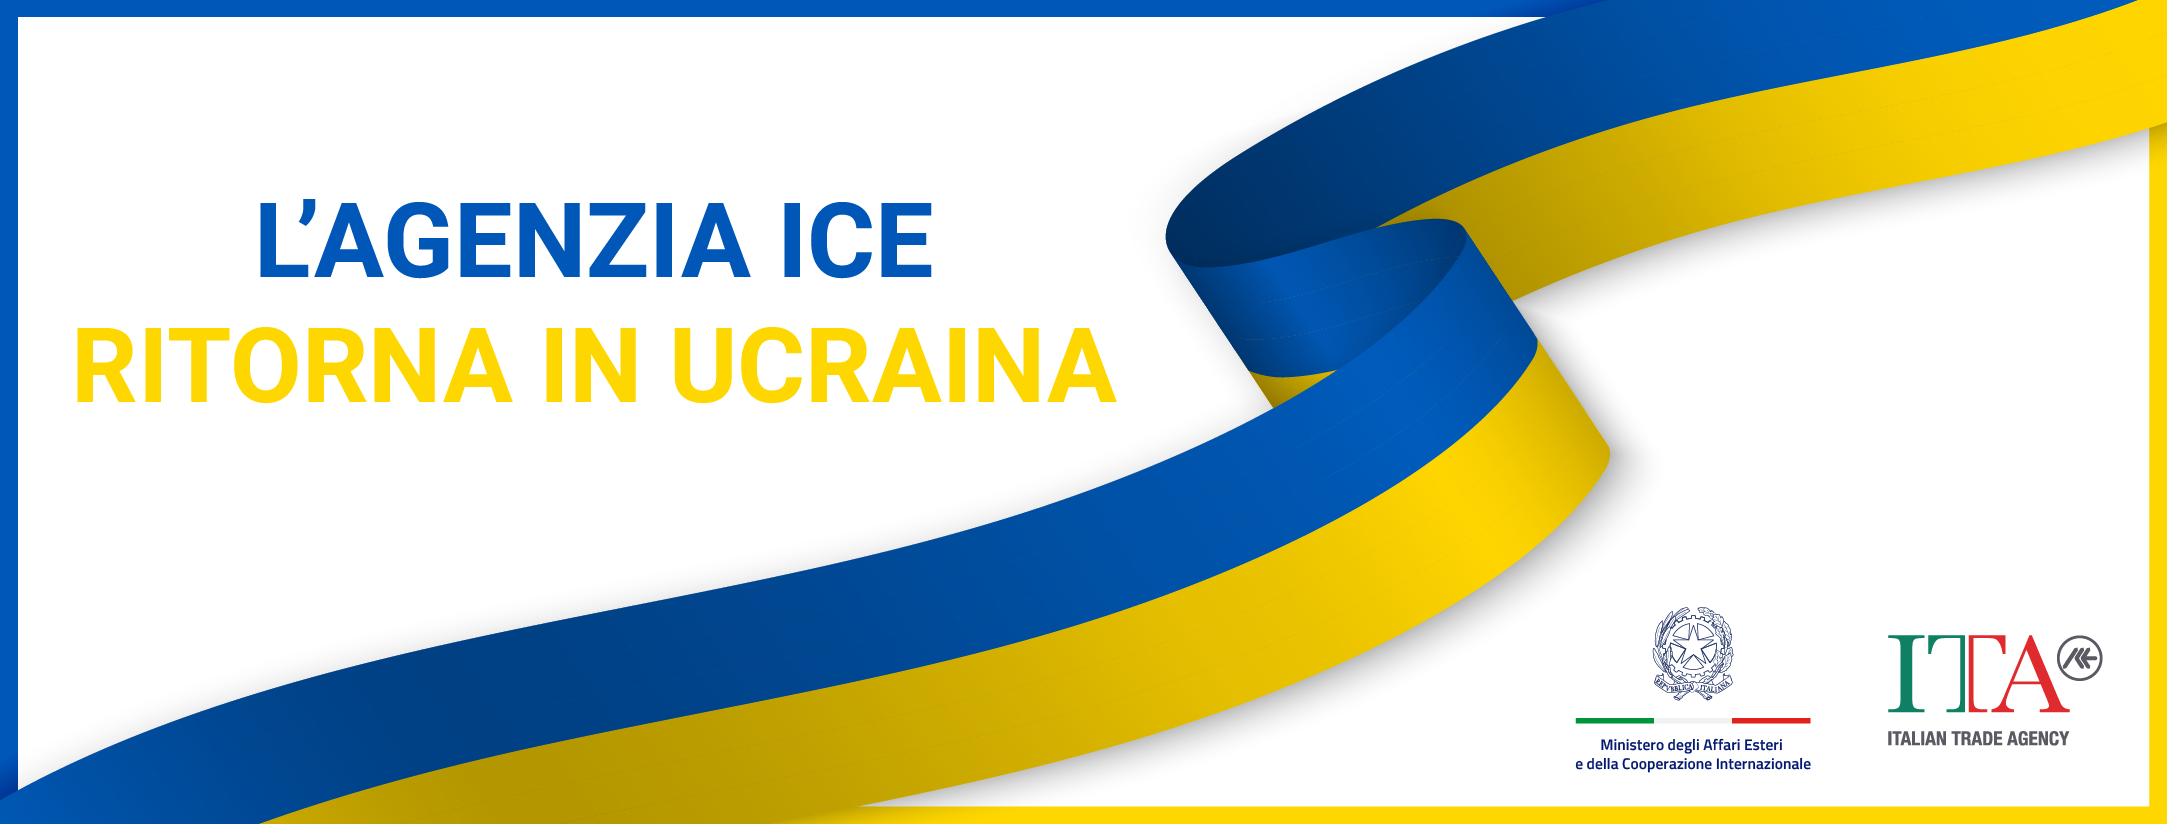 L'Agenzia ICE ritorna in Ucraina